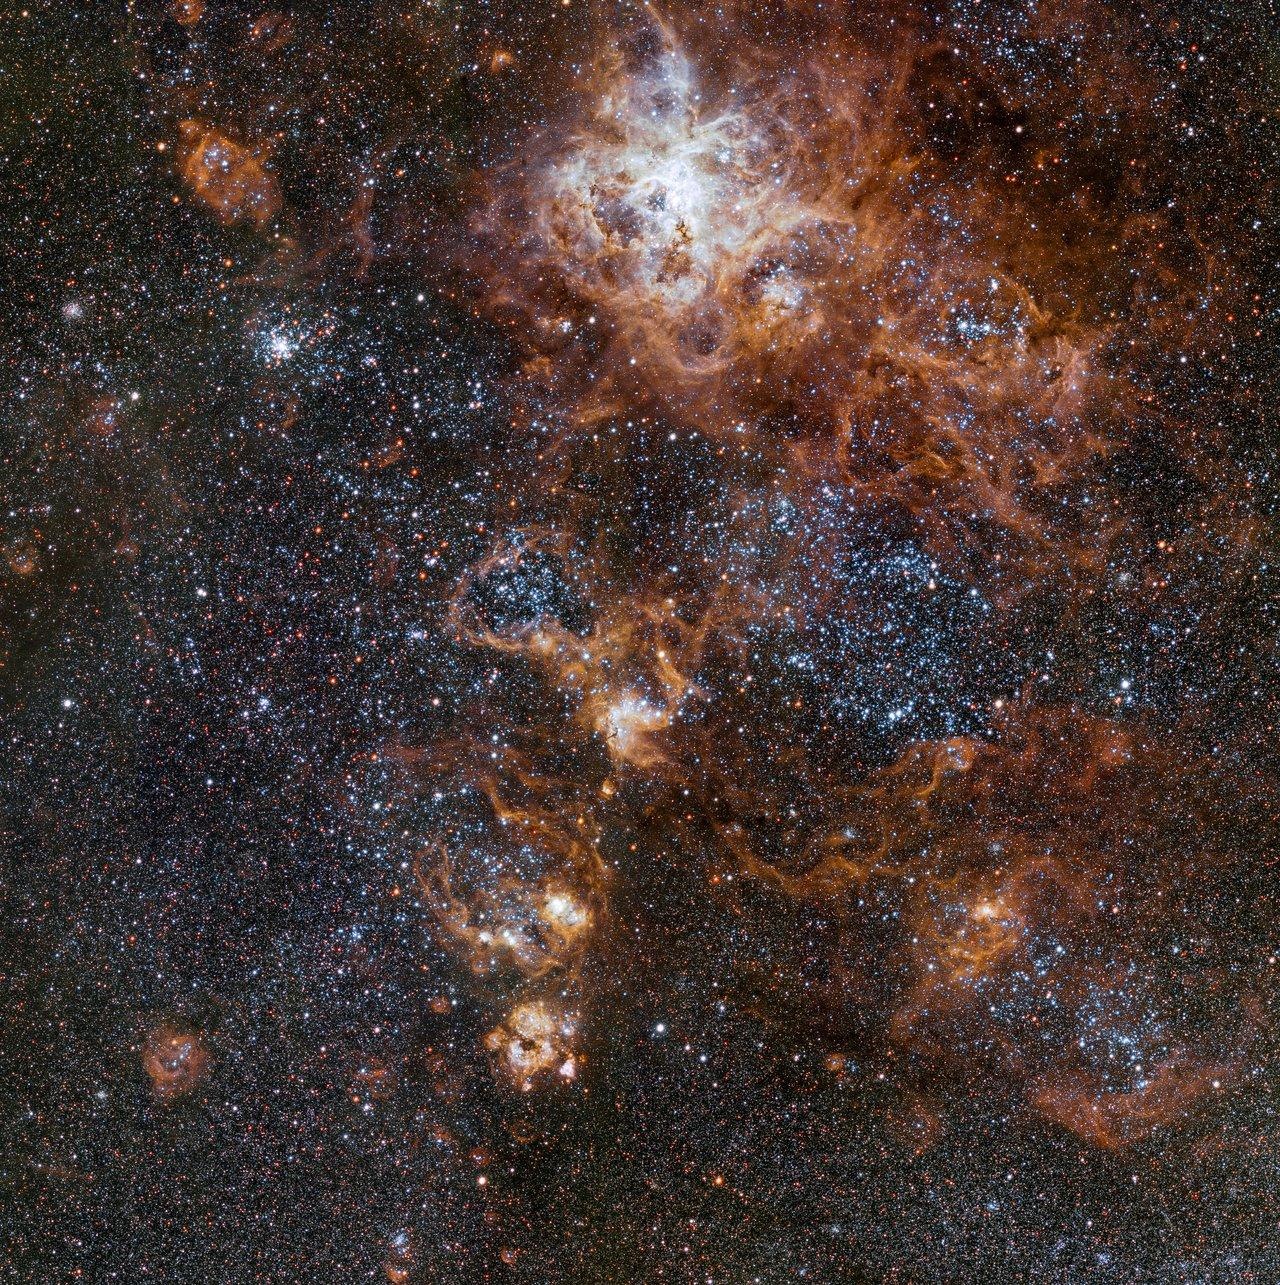 A quelque 160'000 années lumière brille la Nébuleuse de la Tarentule, la structure la plus spectaculaire du Grand Nuage de Magellan. Cette région révèle un paysage céleste constellé d'amas stellaires, de nuages de gaz brillant ainsi que de restes épars d'explosions de supernovae. [ESO]